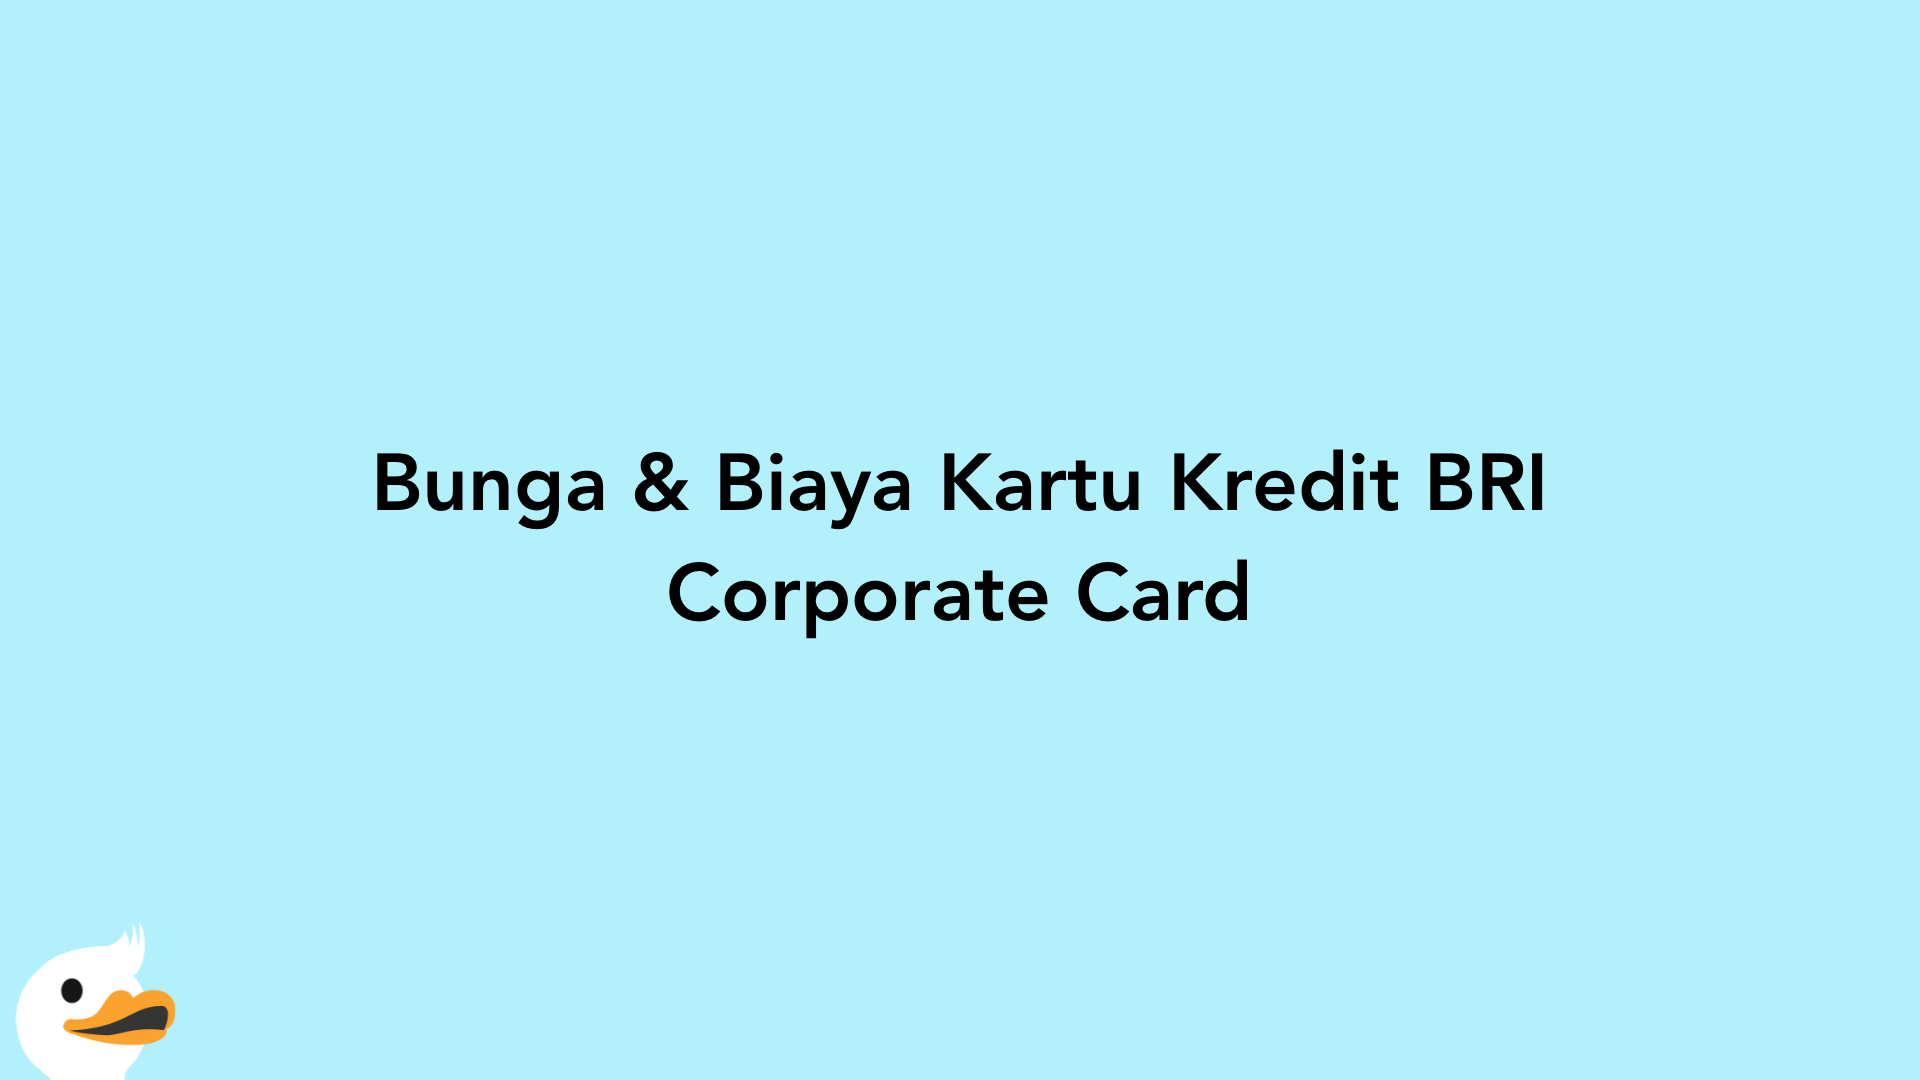 Bunga & Biaya Kartu Kredit BRI Corporate Card